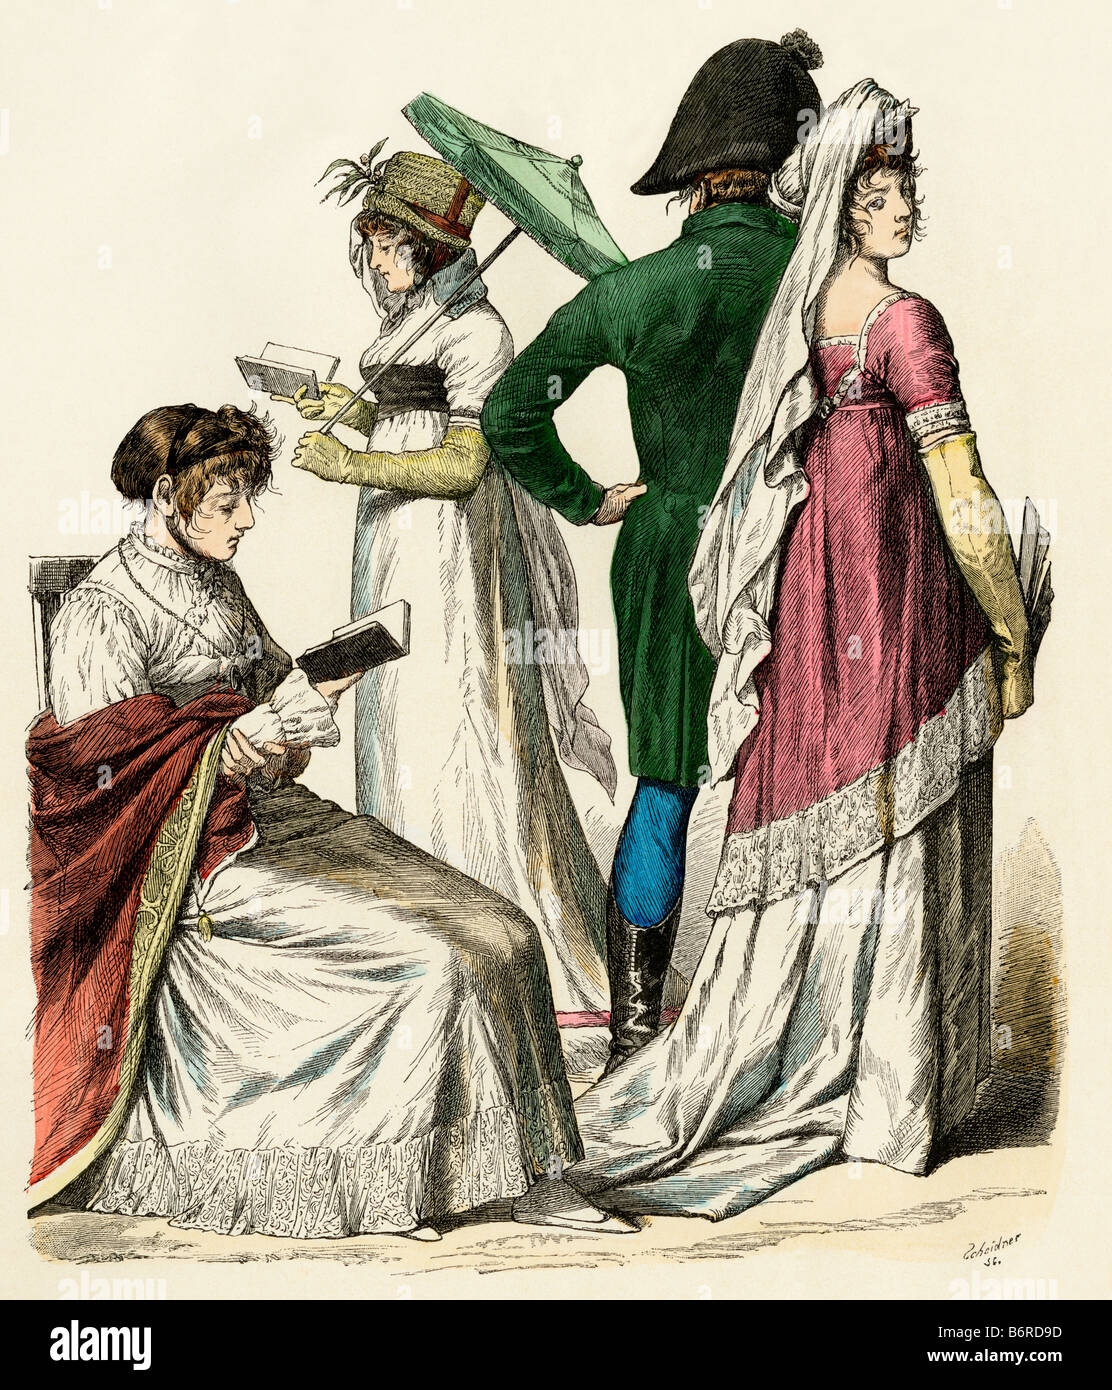 European Ladies lectura y un par de caminatas durante el temprano período del Imperio Francés de 1802 a 1804. Mano de color imprimir Foto de stock